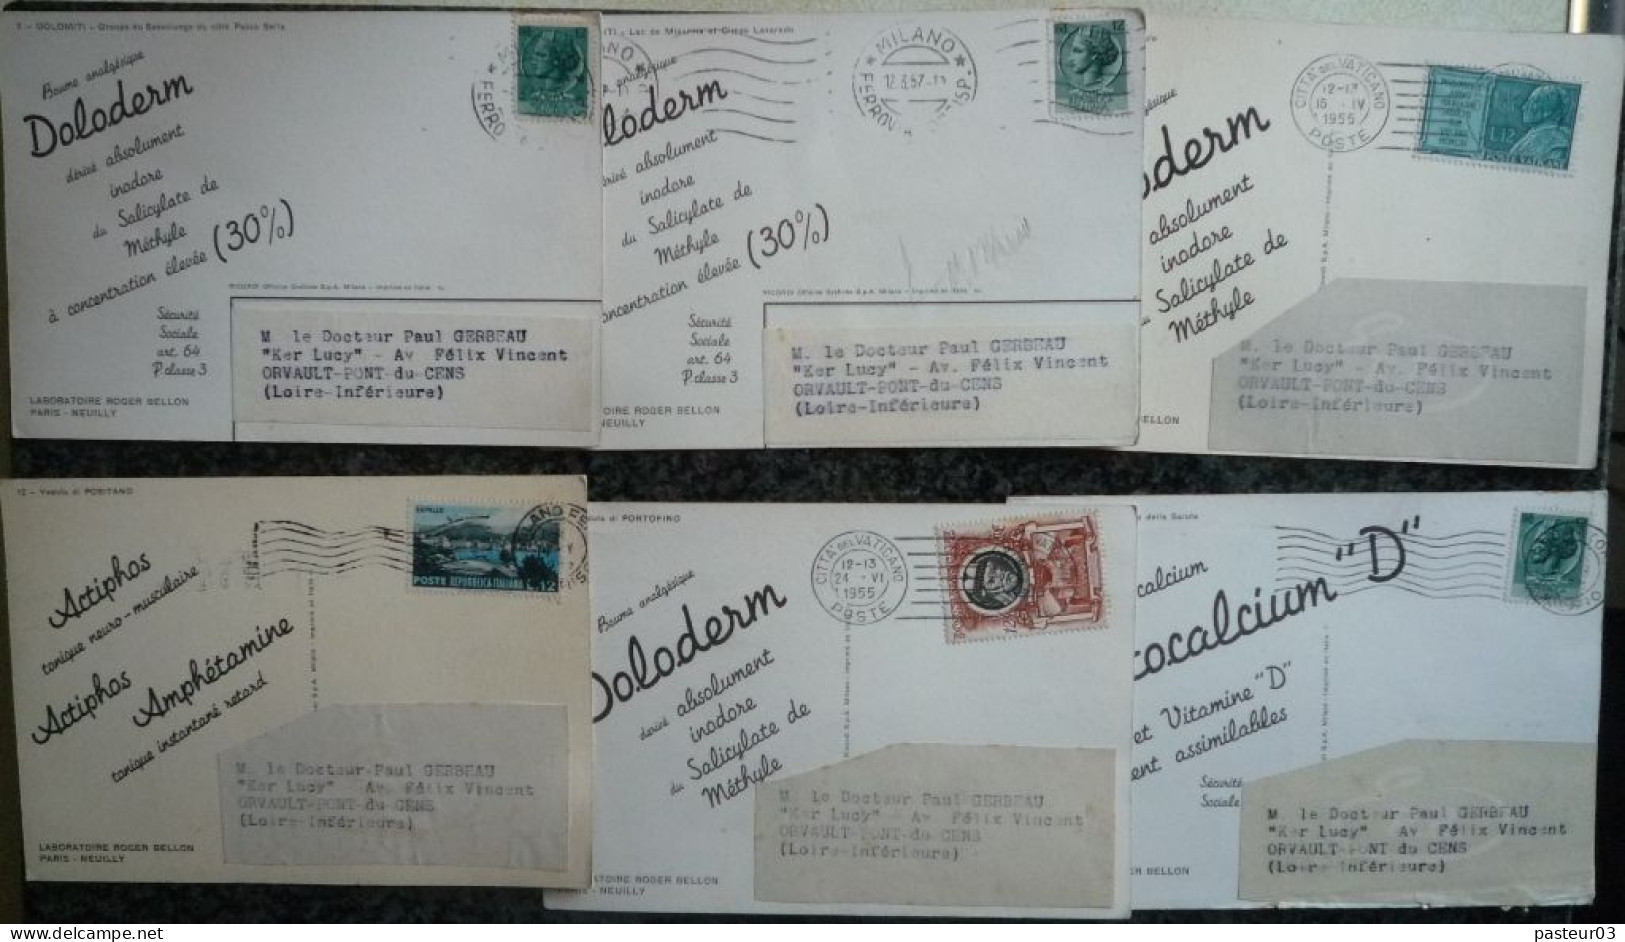 Lot de 95 Cartes Postales Laboratoires Roger BELLON Paris Neuilly vues d'Italie